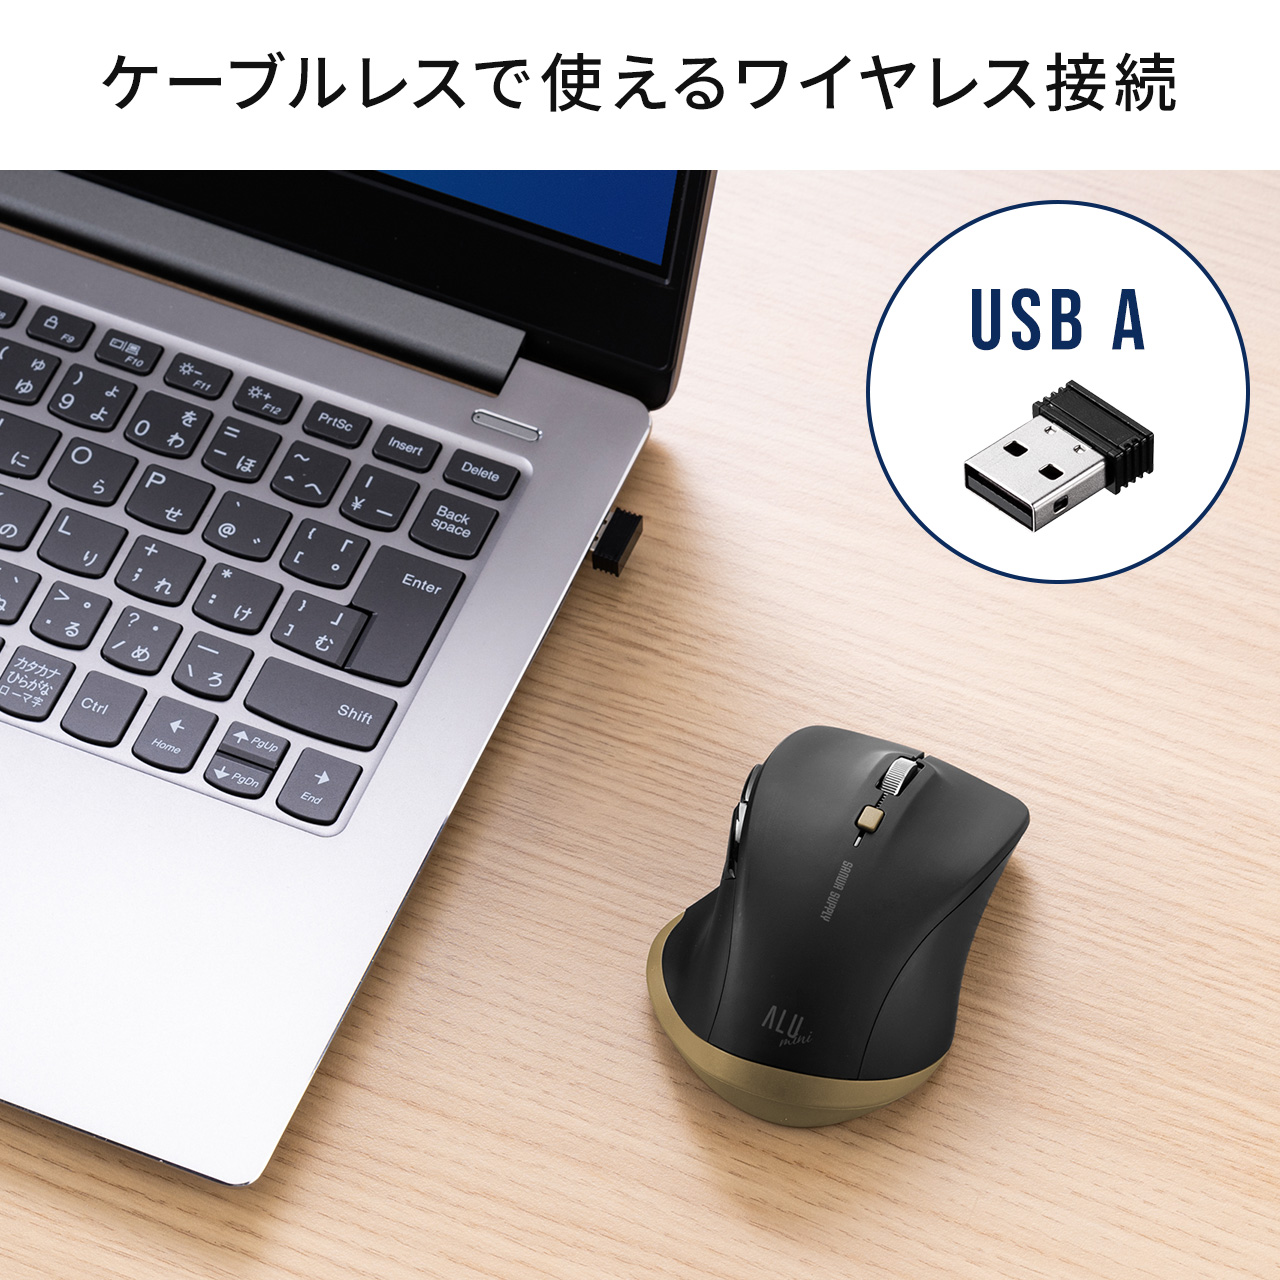 ワイヤレスマウス USB A 無線 小型 5ボタン 戻る進む アルミホイール 静音 ALUmini ブラック 400-MAW159BK2